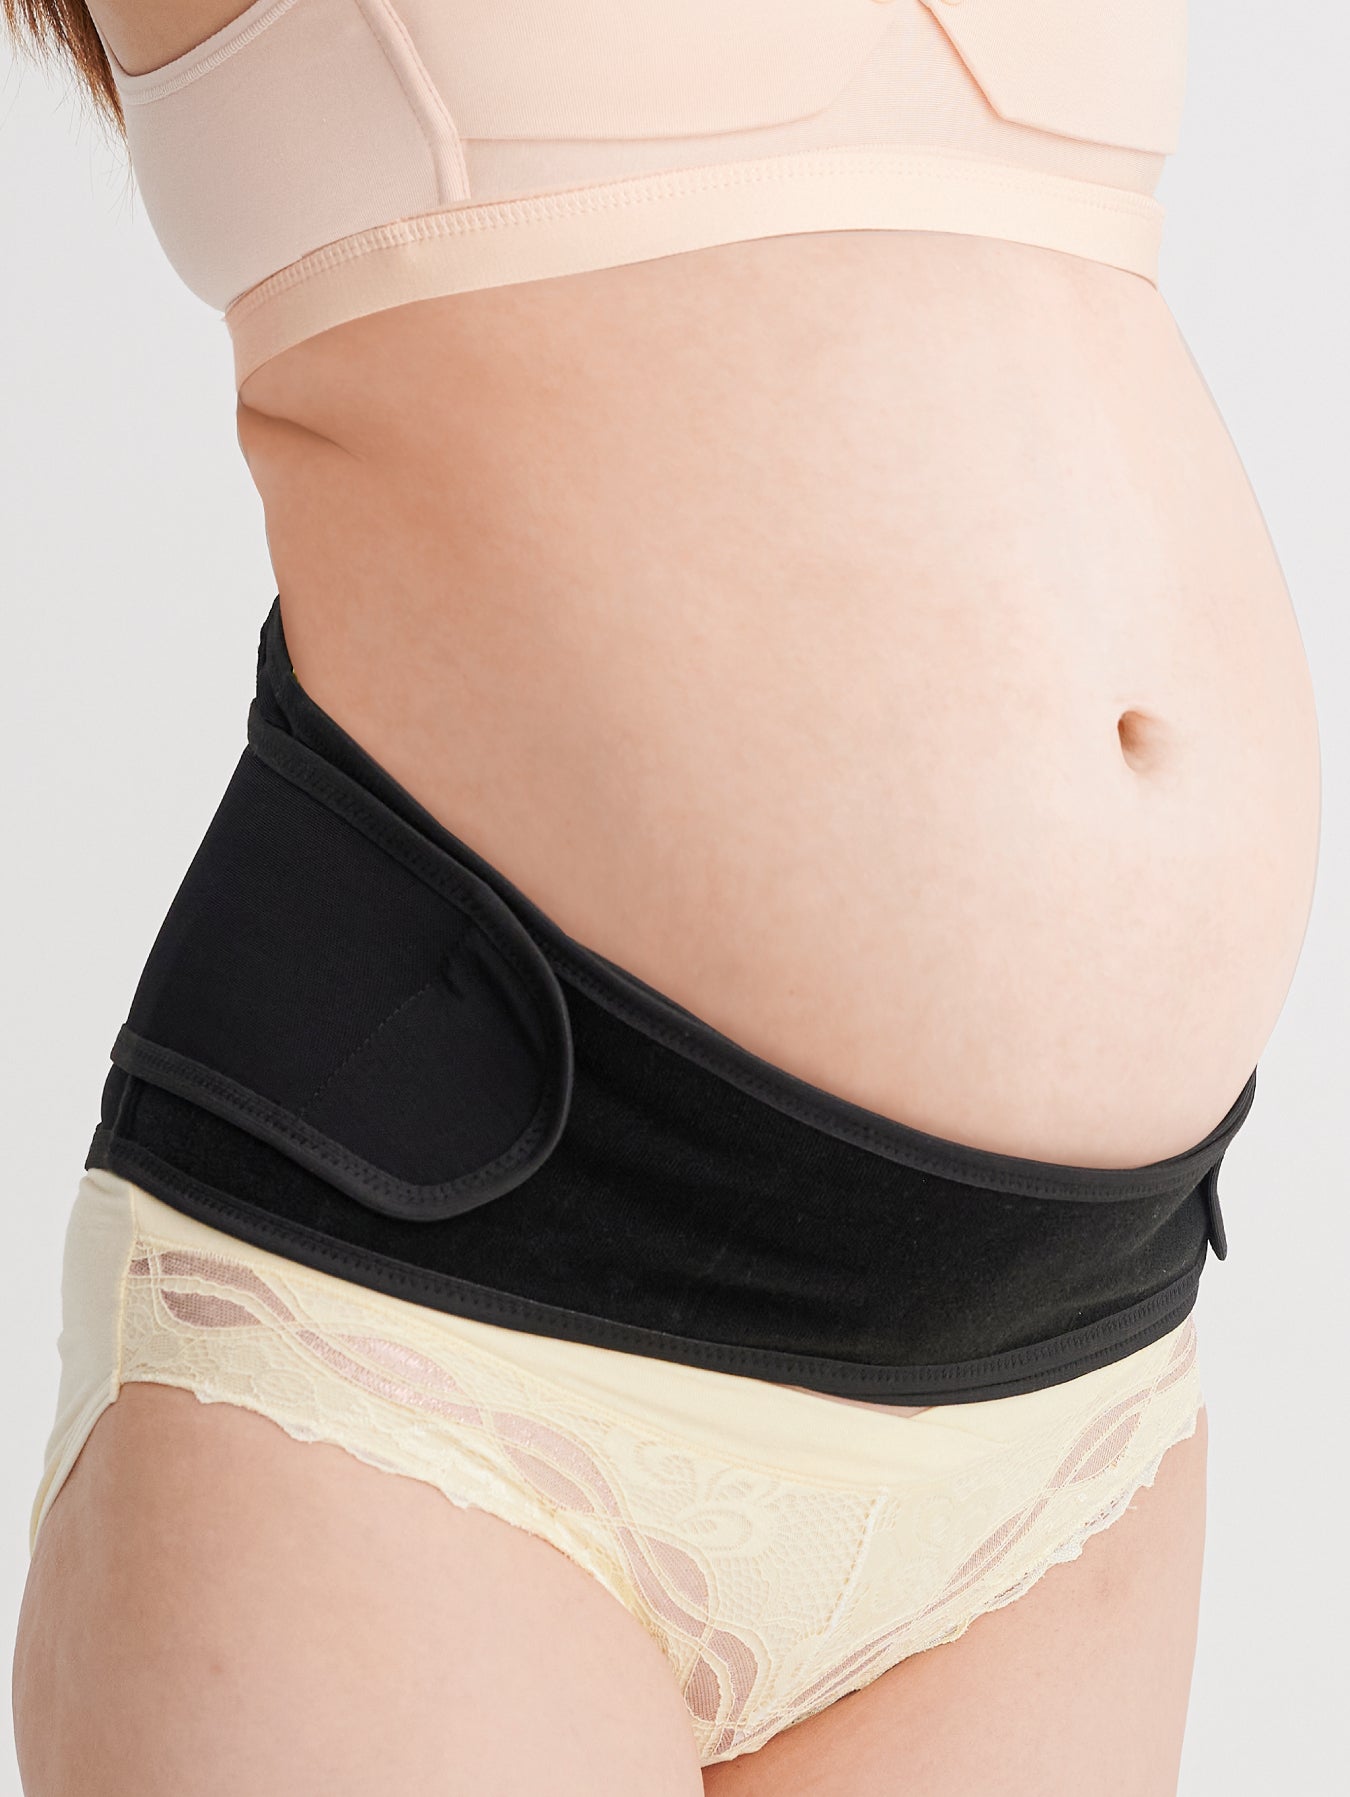 Bmama Premium Maternity Support Belt 